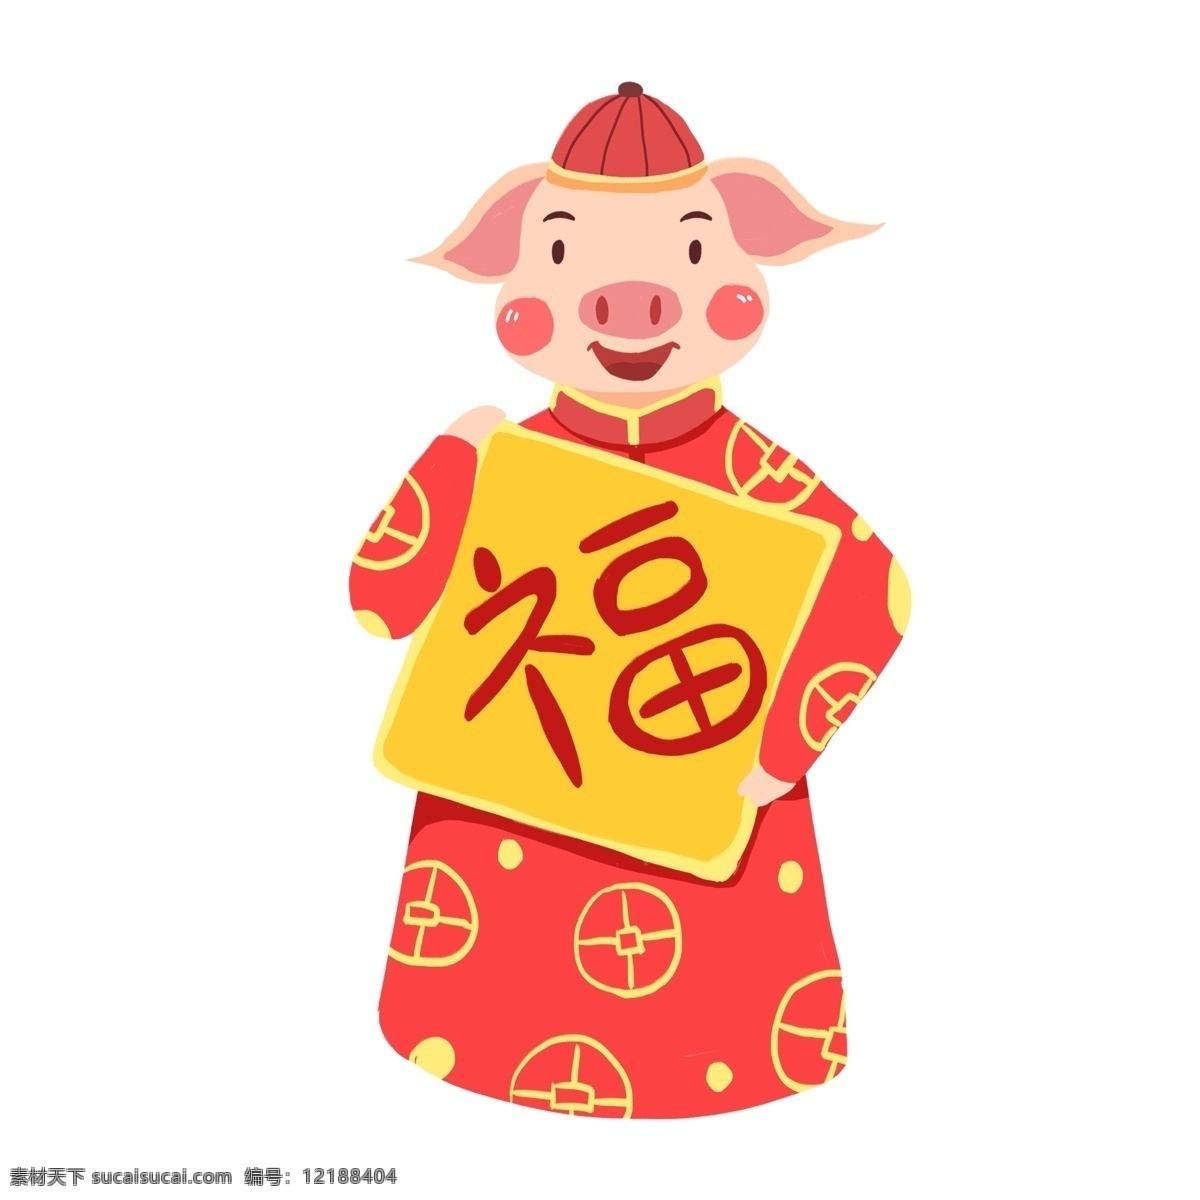 手绘 可爱 猪 拜年 原创 元素 卡通 红色 福字 设计元素 春节素材 猪年 原创元素